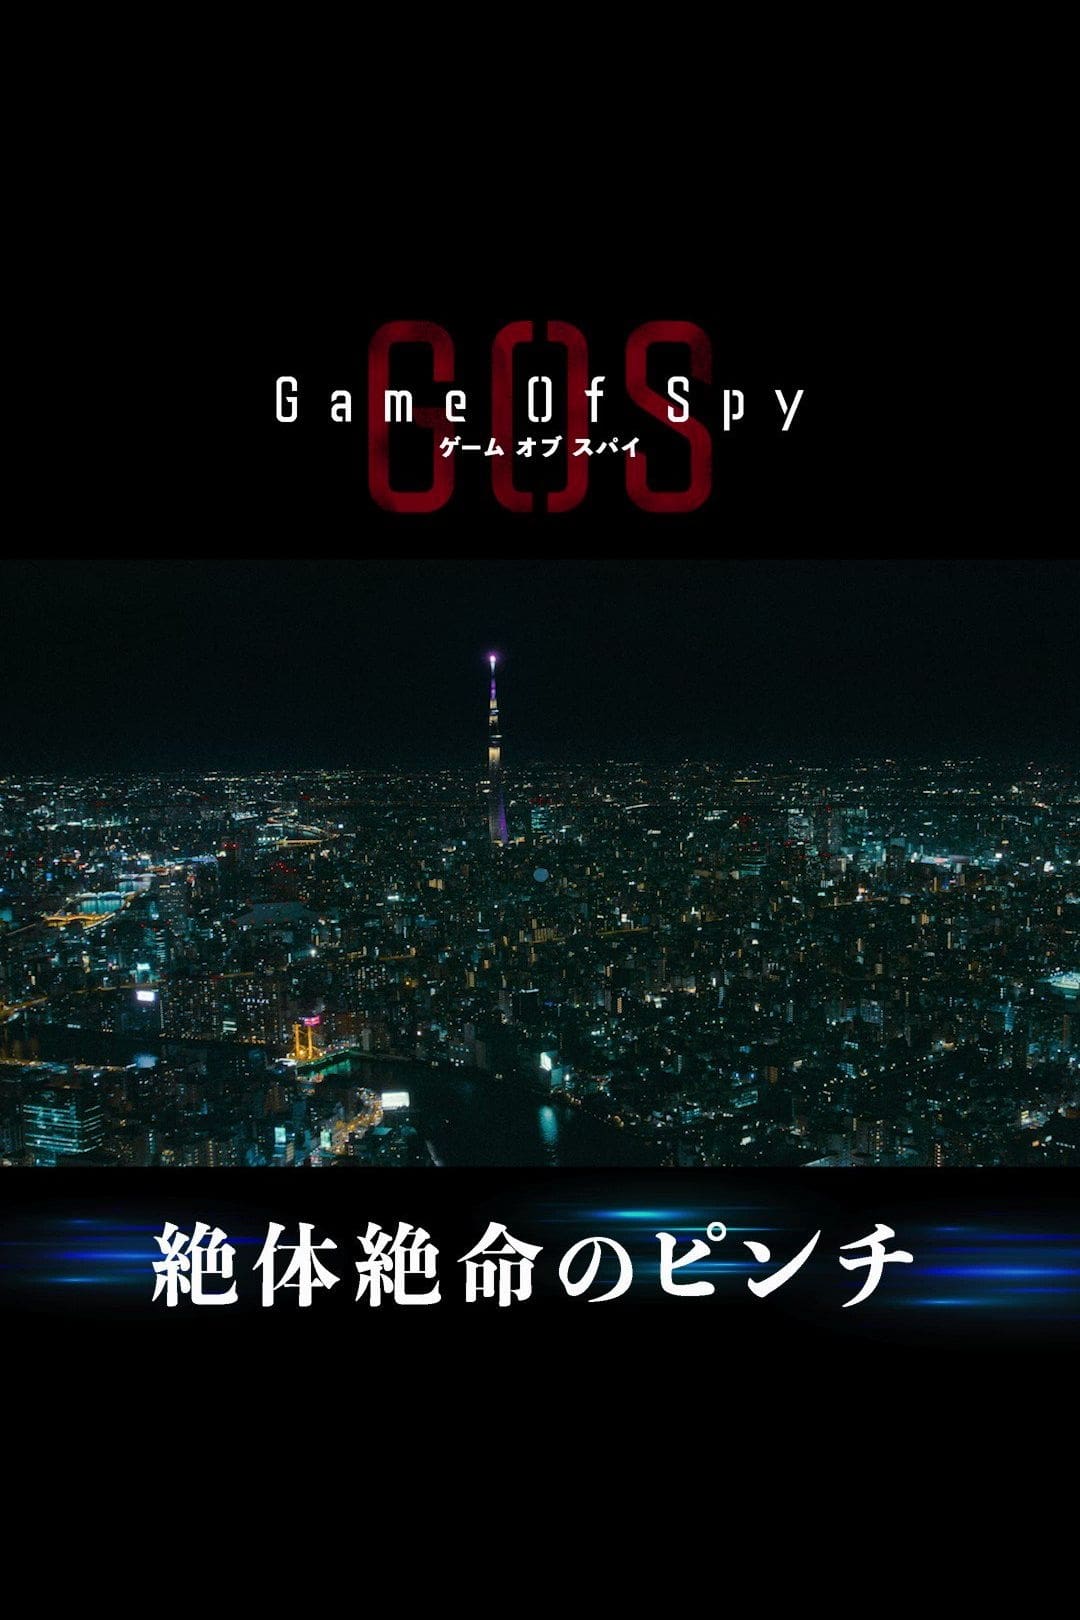 ゲーム・オブ・スパイ TV Shows About Spy